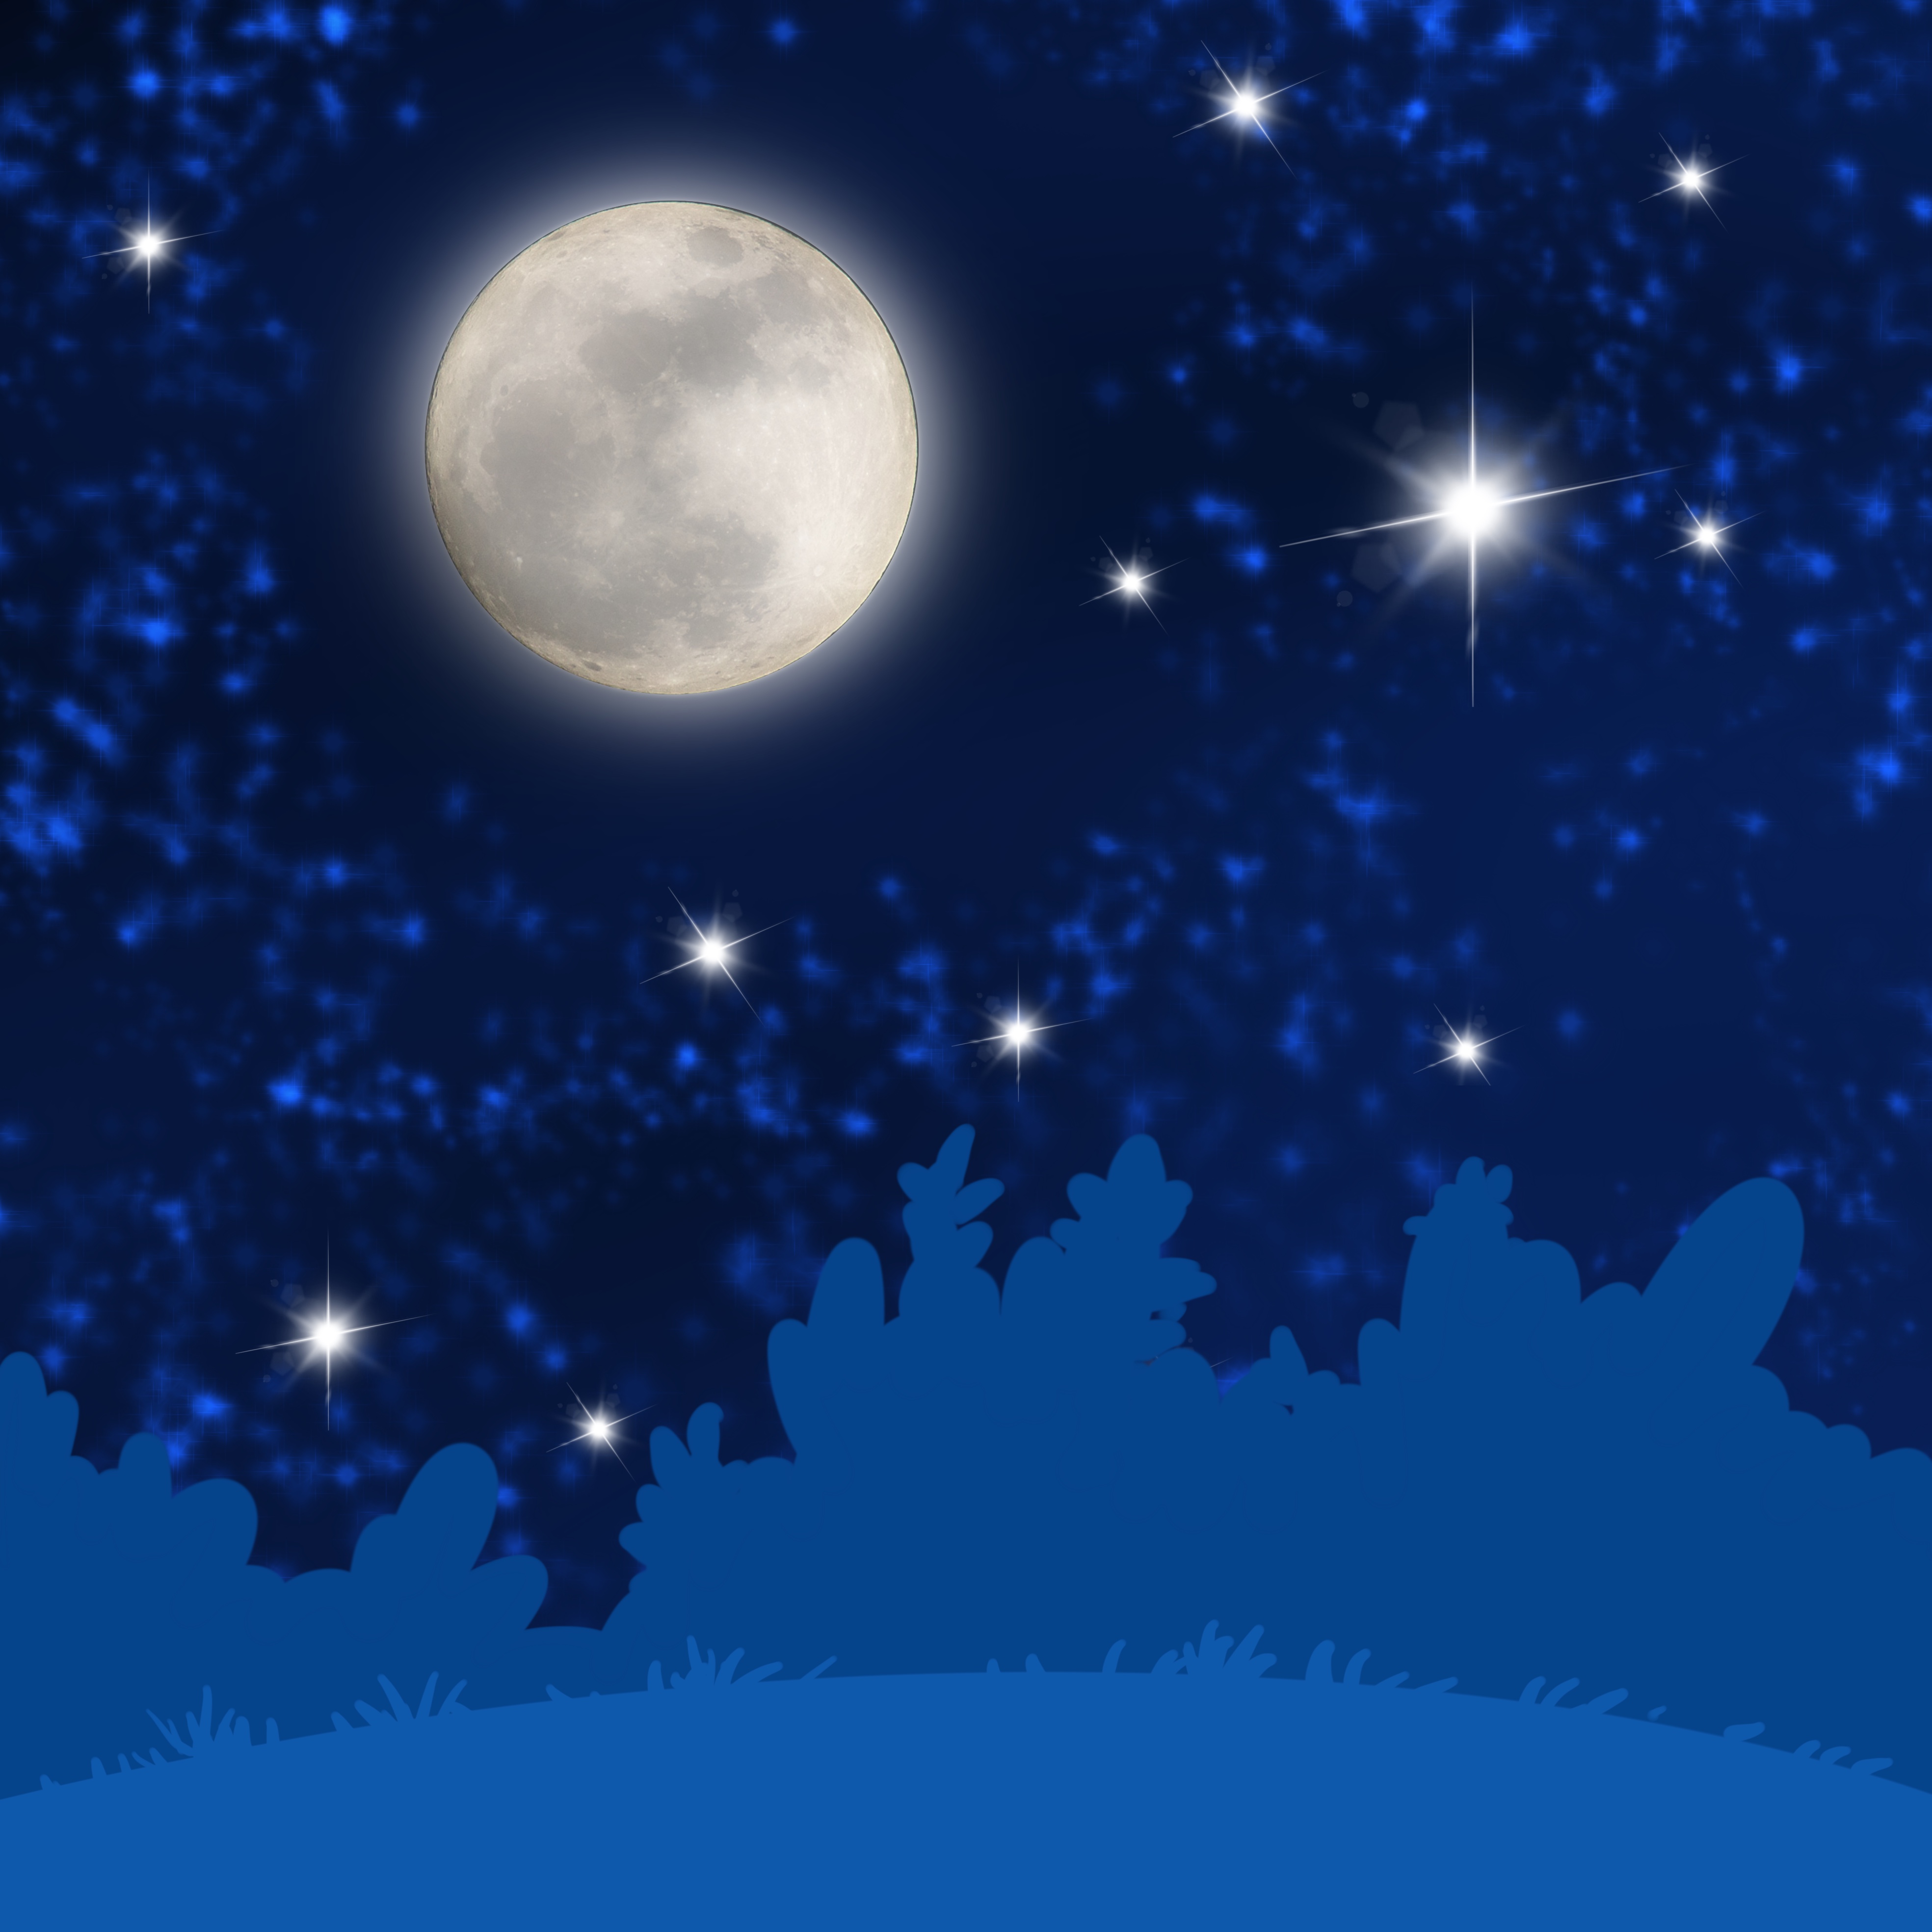 Mjesec, zvijezde i noćno nebo.